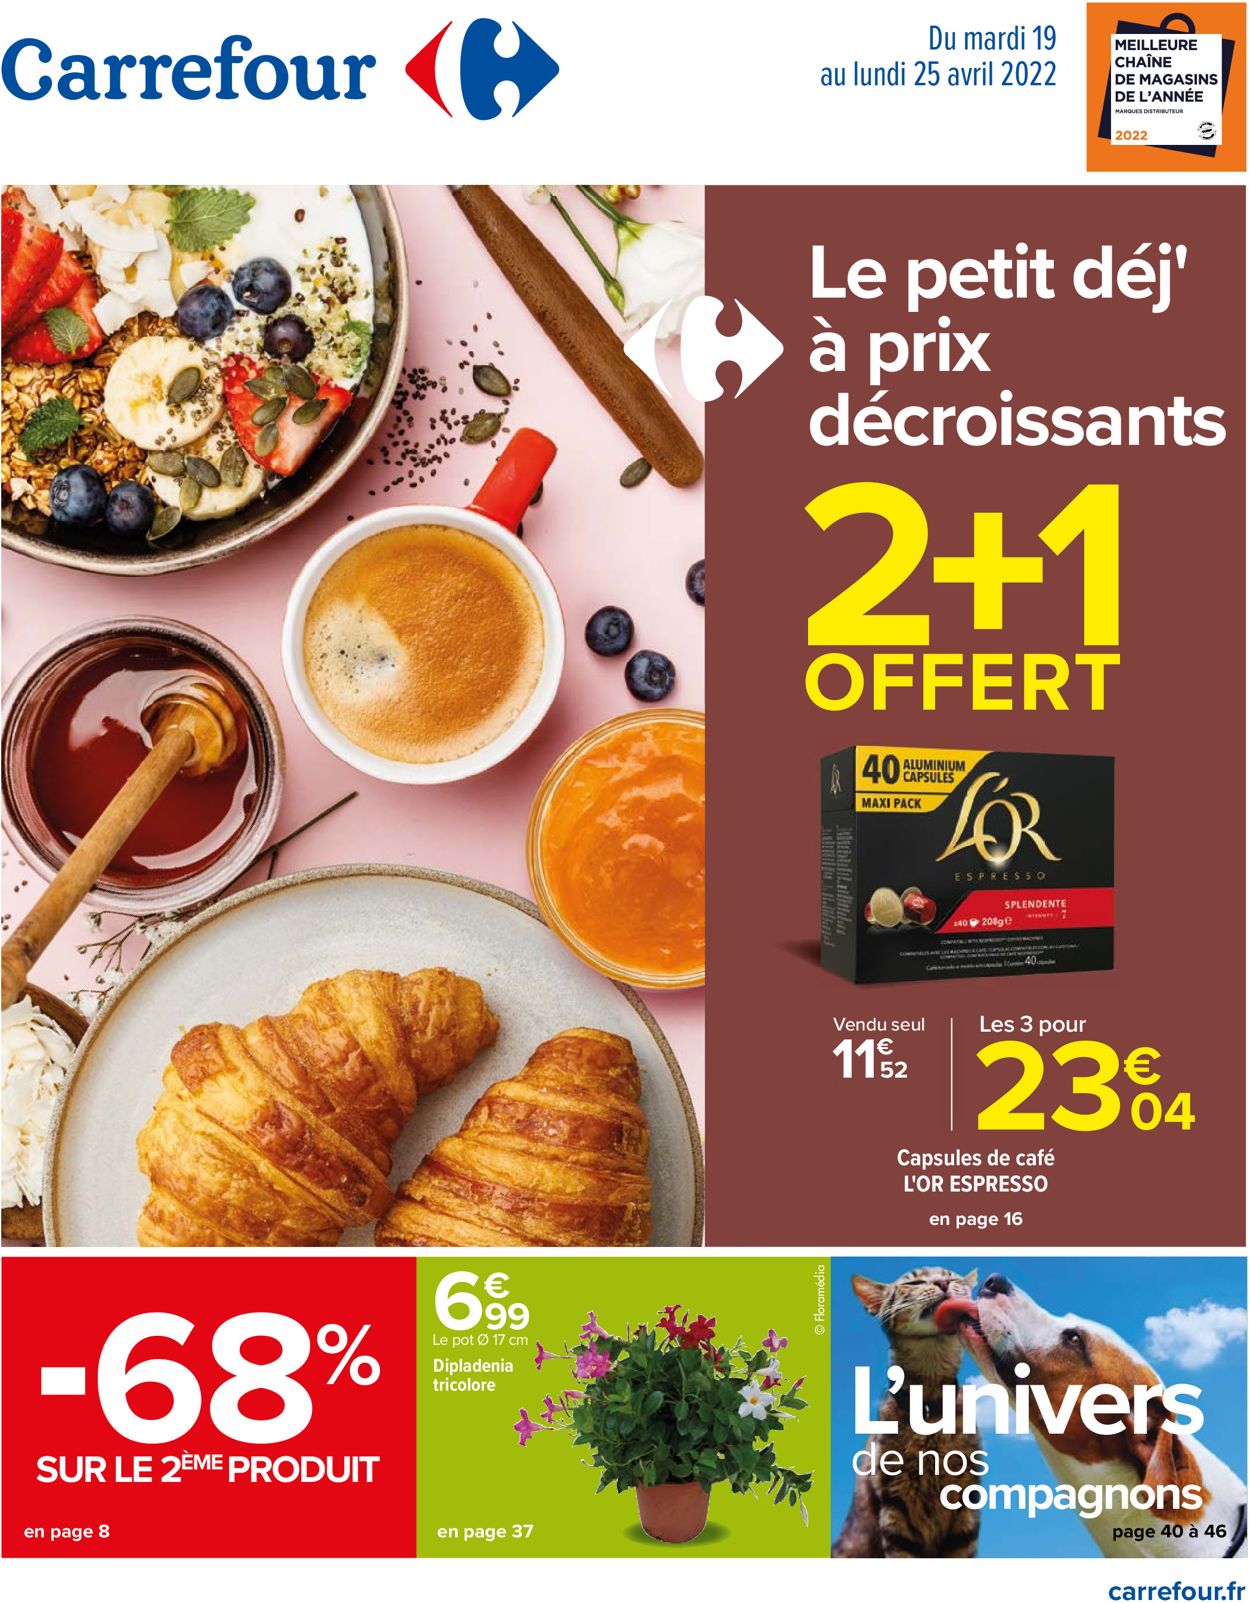 Carrefour Catalogue - 19.04-25.04.2022